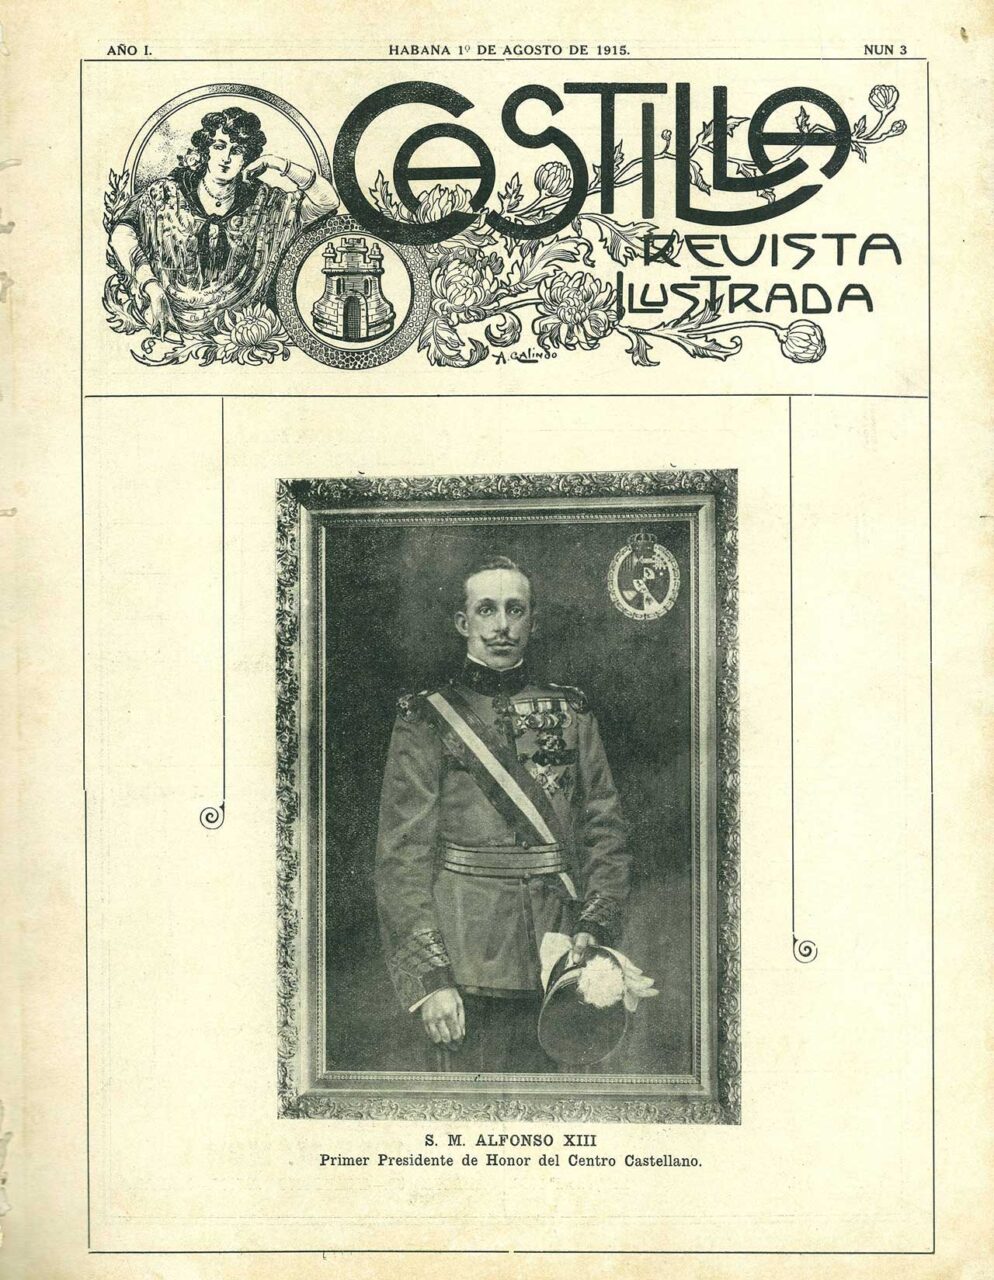 Portada de la publicación Castilla Revista Ilustrada, vinculada al asociacionismo castellano en Cuba, La Habana (Cuba), agosto de 1915